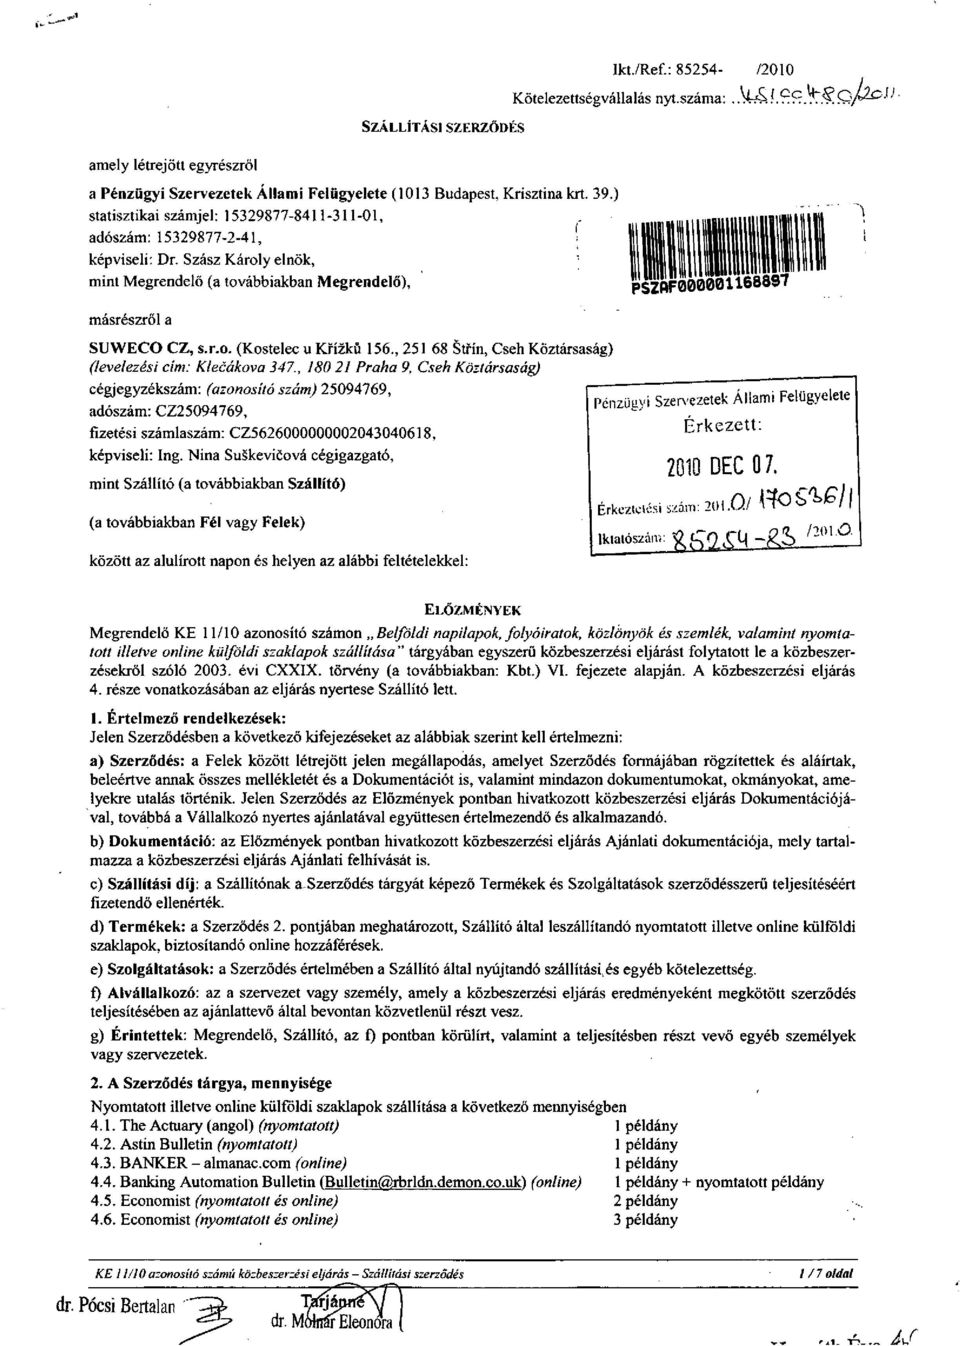 , 2 68 Stfín, Cseh Köztársaság) (levelezési cím: Klecákova 347.